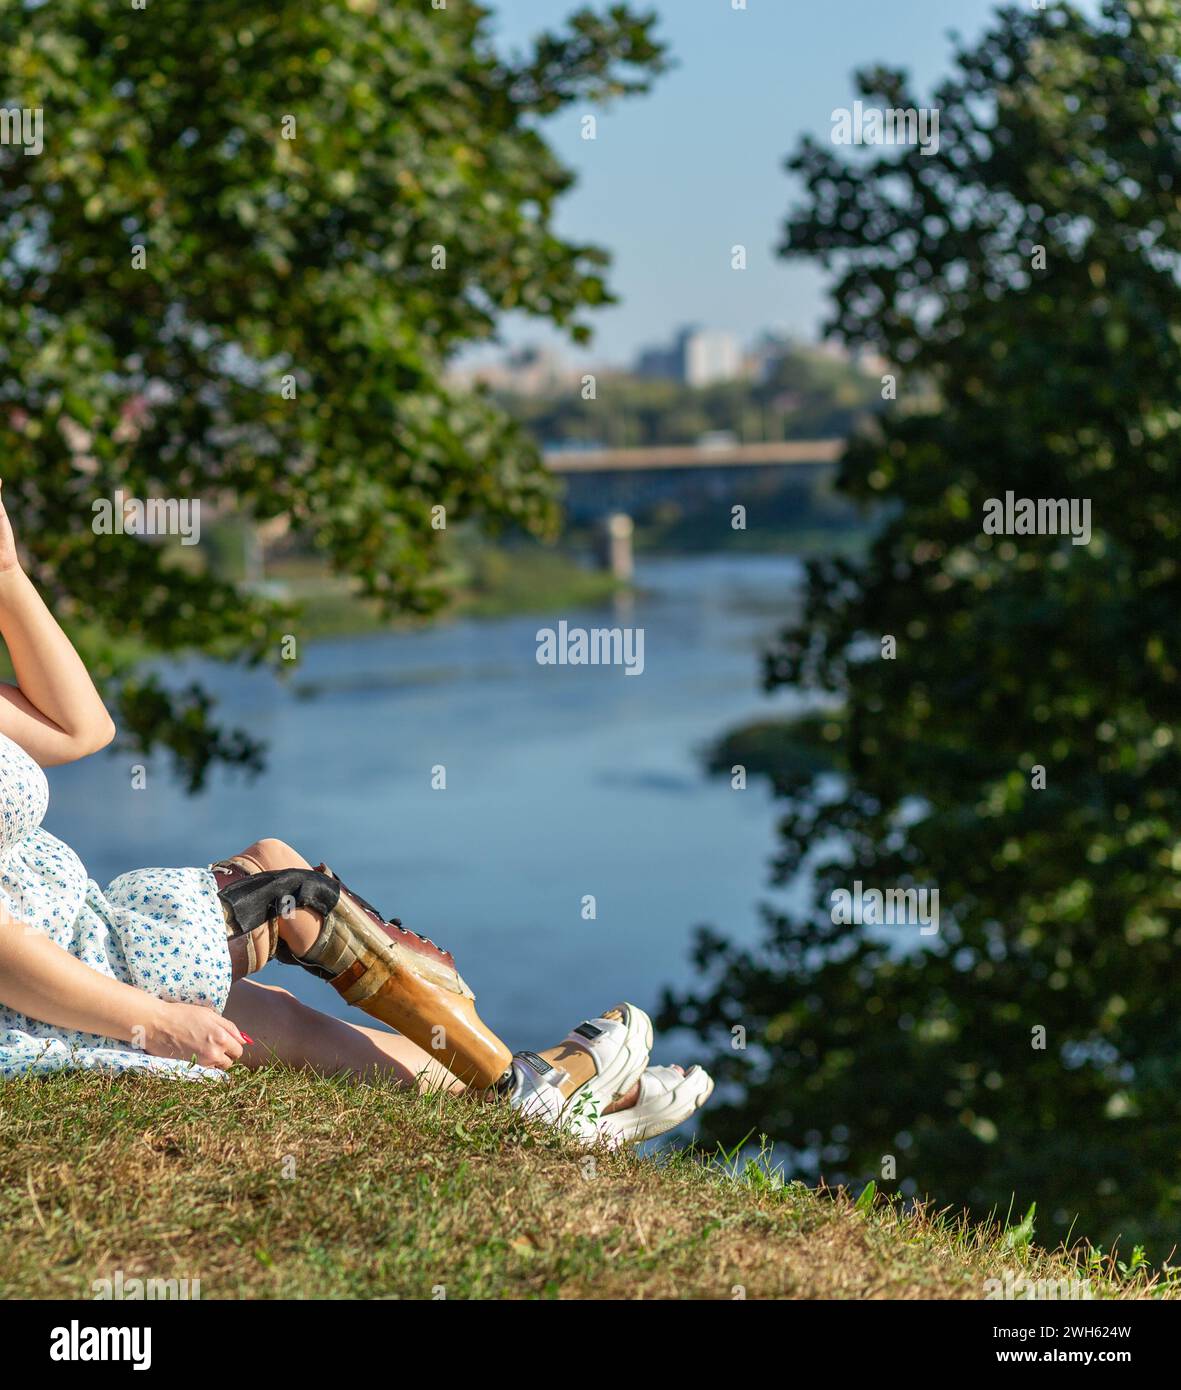 Schöne junge Frau Beinamputierte in einem Kleid, die im Park in der Nähe des Flusses an sonnigen Tagen spaziert. Das Leben geht weiter, egal was passiert. Stockfoto